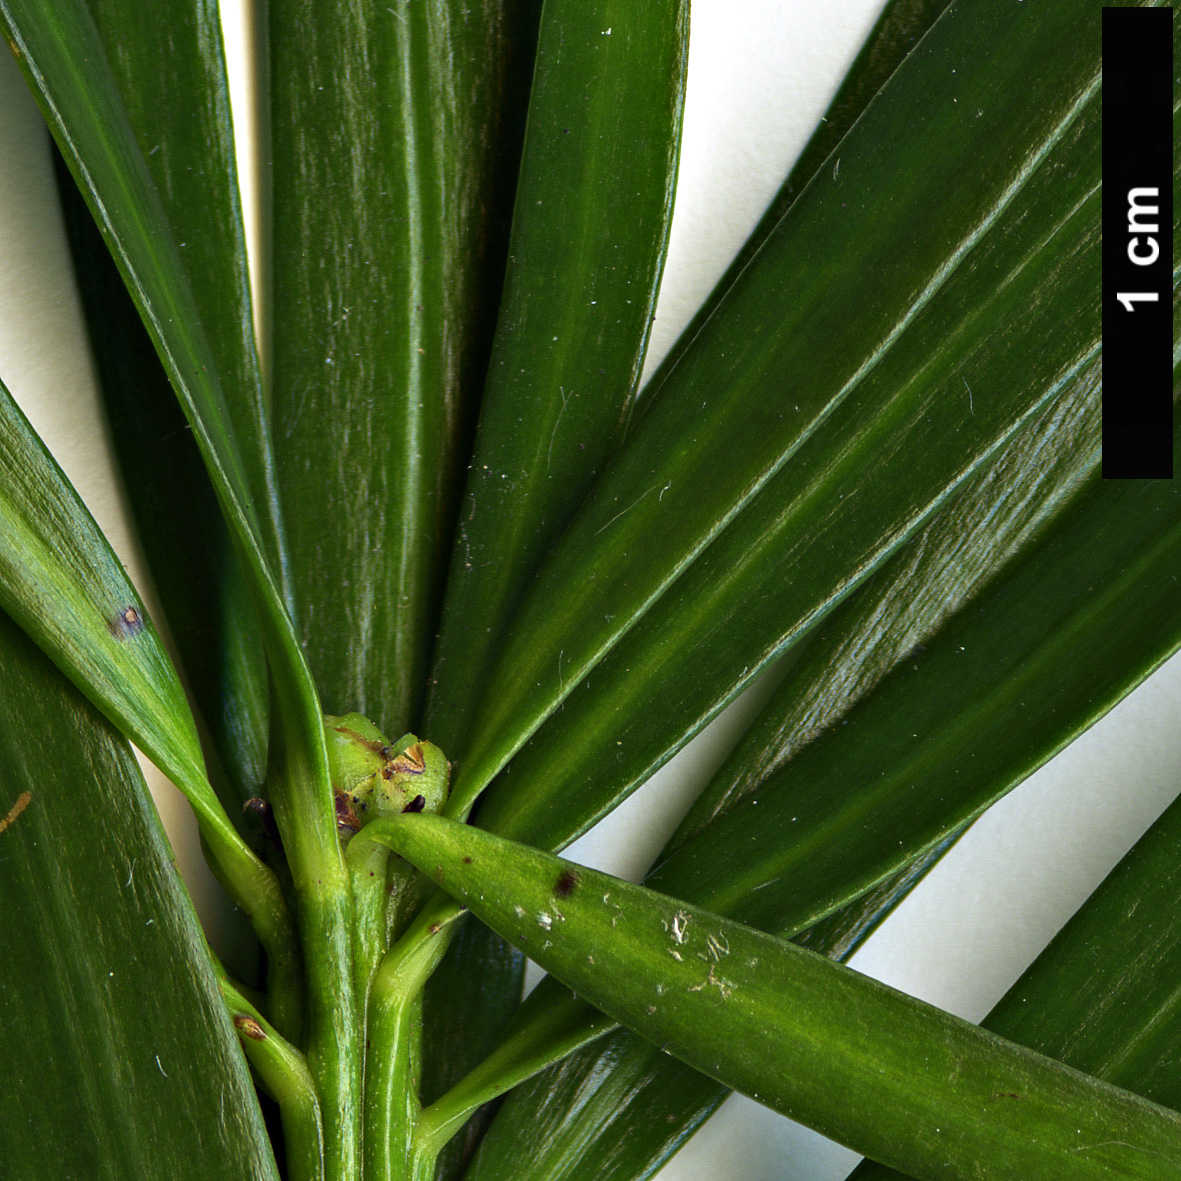 High resolution image: Family: Podocarpaceae - Genus: Podocarpus - Taxon: lambertii